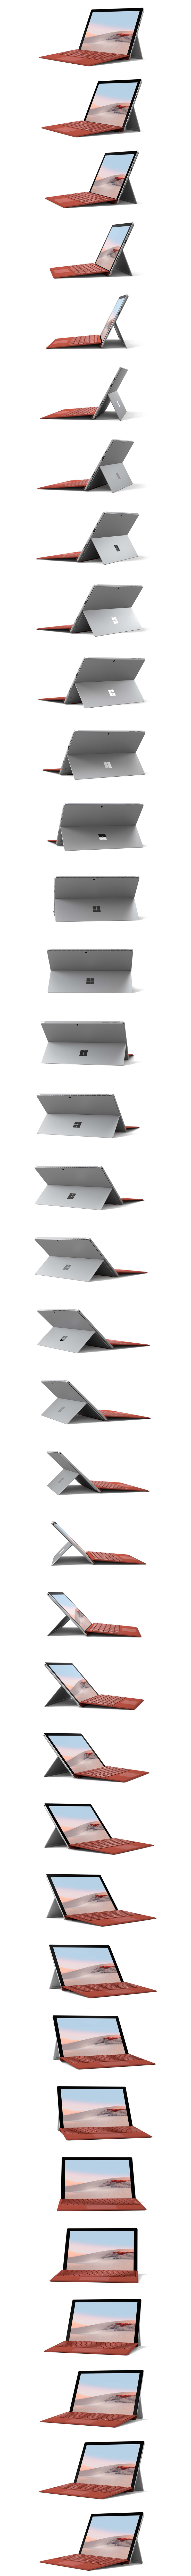 Surface Pro 7을 전방위에서 본 모습